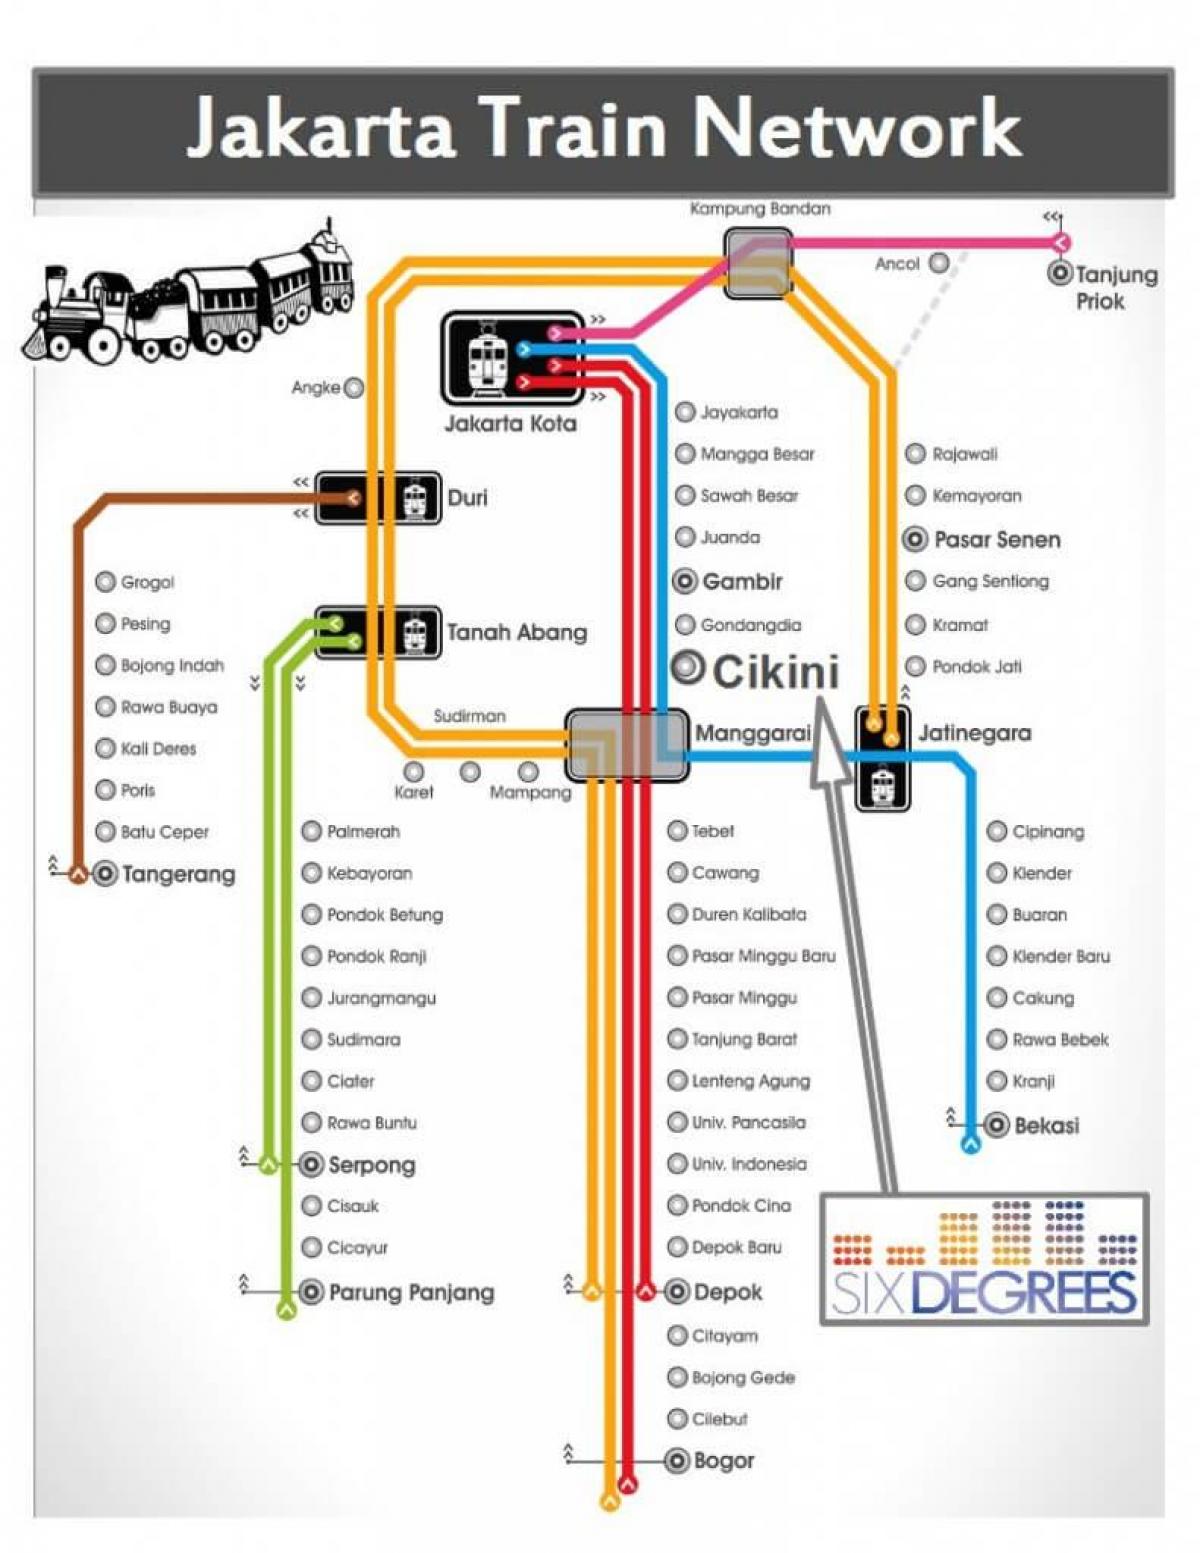 جکارتہ ریلوے کا نقشہ